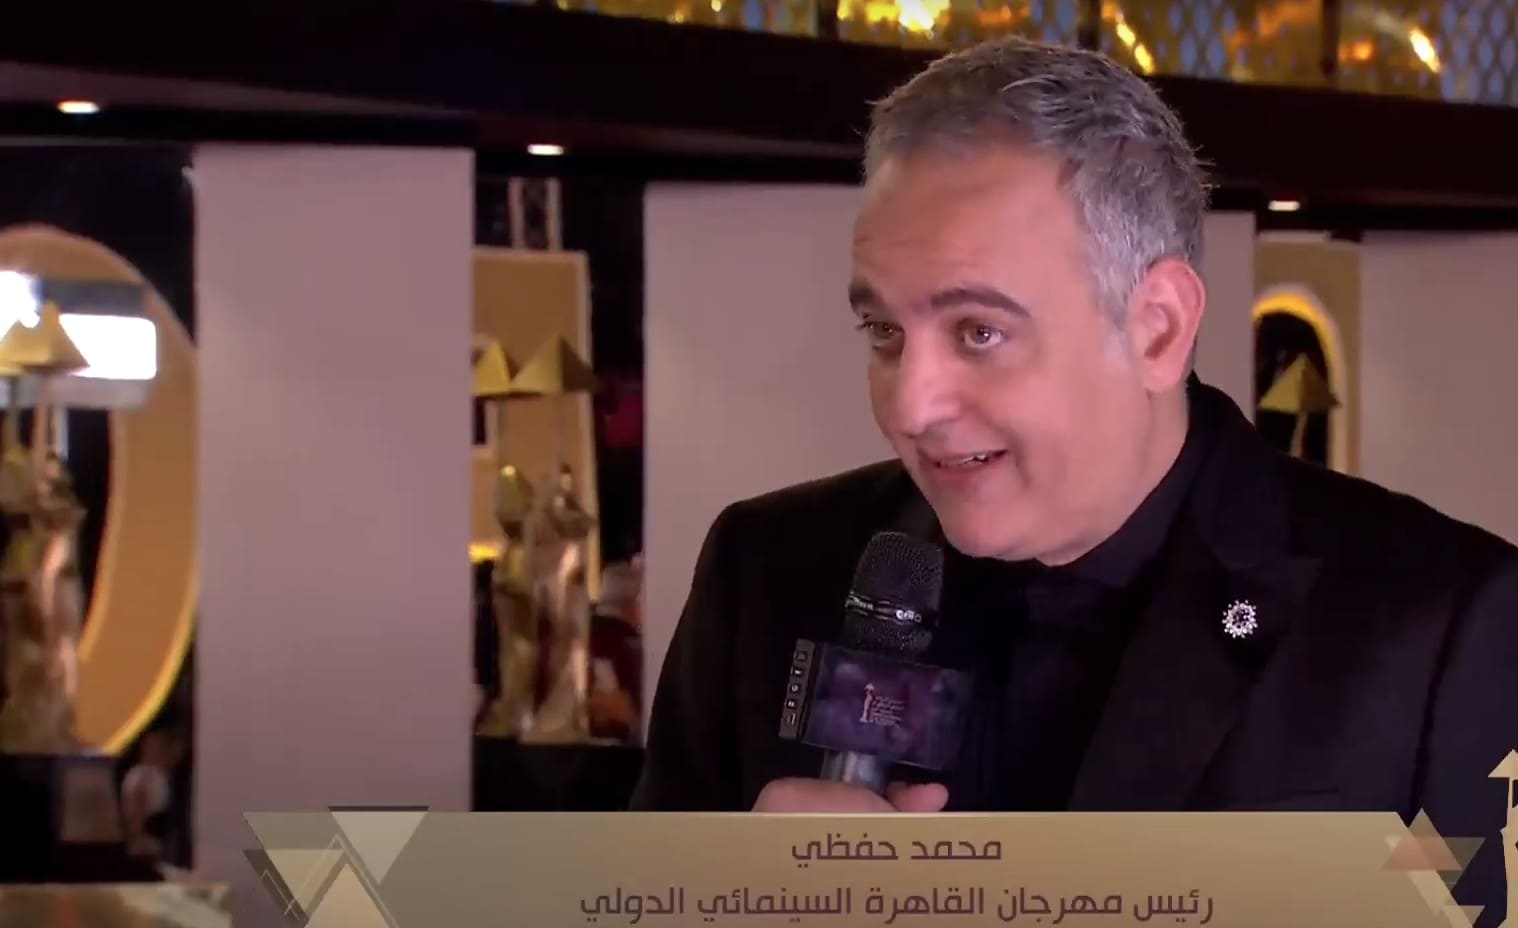 محمد حفظي يشكر كل من ساهم في افتتاح "الكباش"